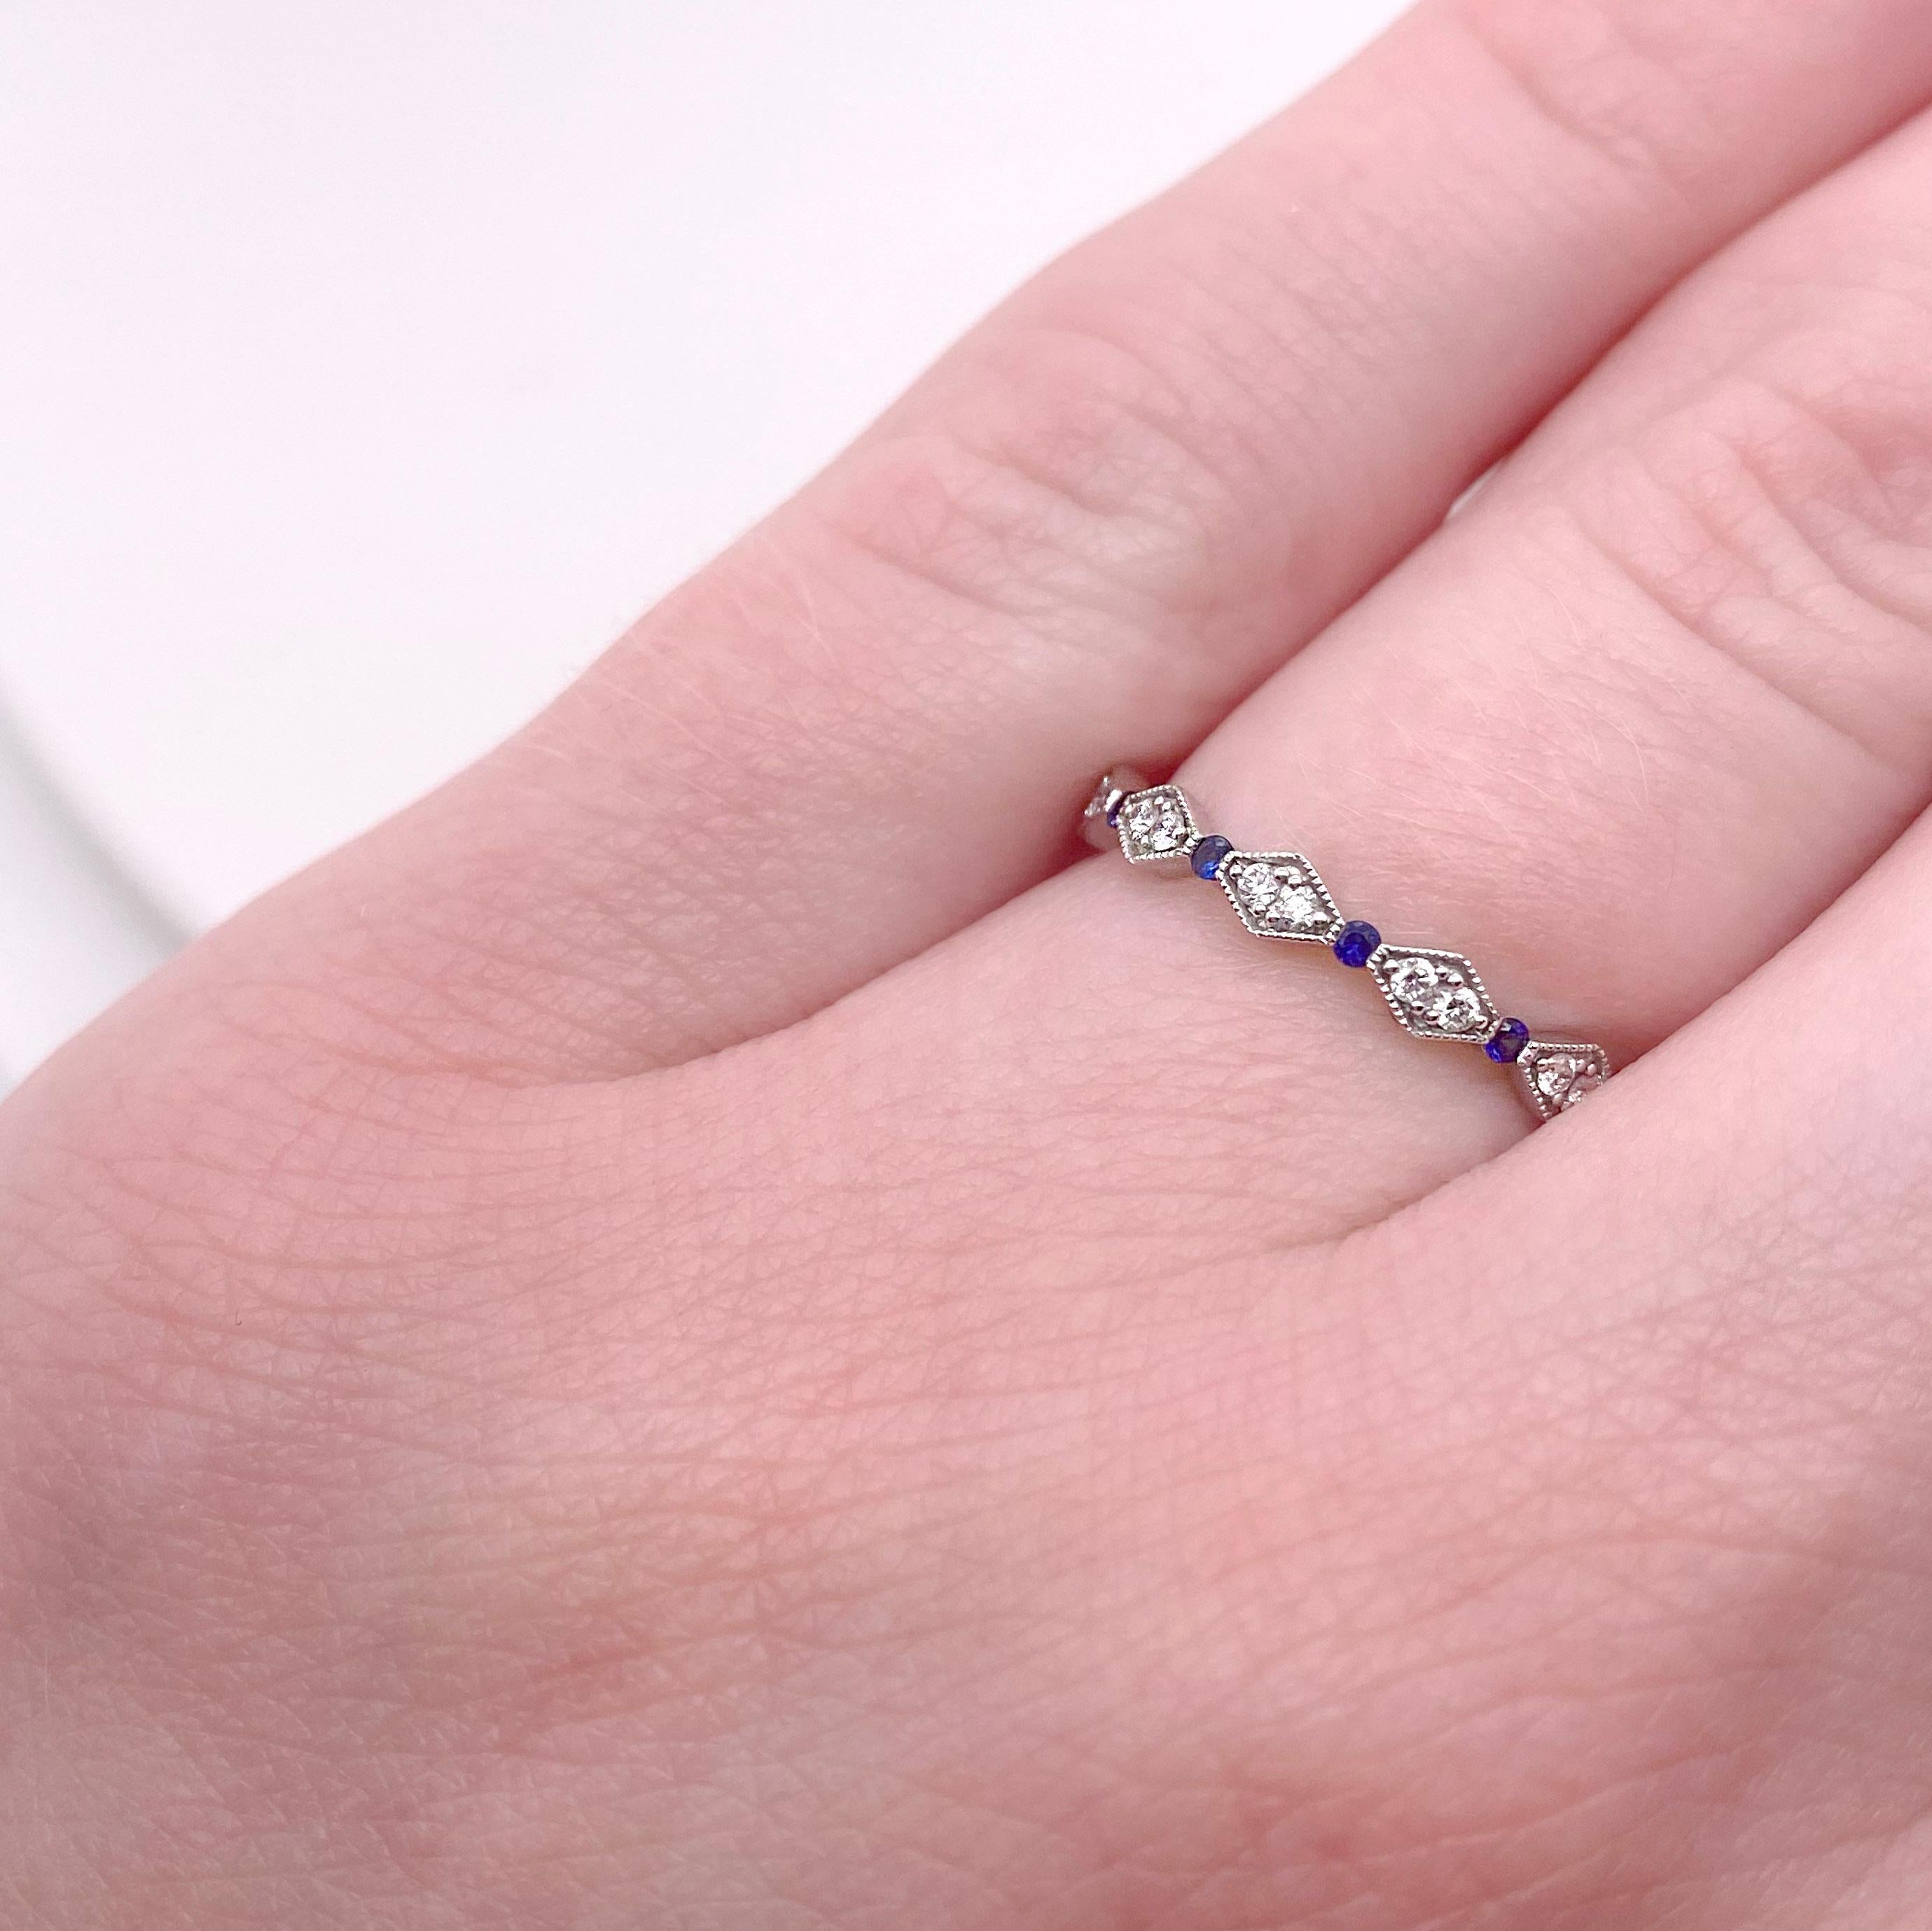 Die Details zu diesem schönen Ring sind unten aufgeführt:
Metallqualität: 14k Weißgold
Diamant Nummer: 12
Form des Diamanten: Rund
Diamant Karat Gewicht: Ungefähr .10 Karat
Reinheit des Diamanten: VS2 (Ausgezeichnet, augenrein)
Farbe des Diamanten: